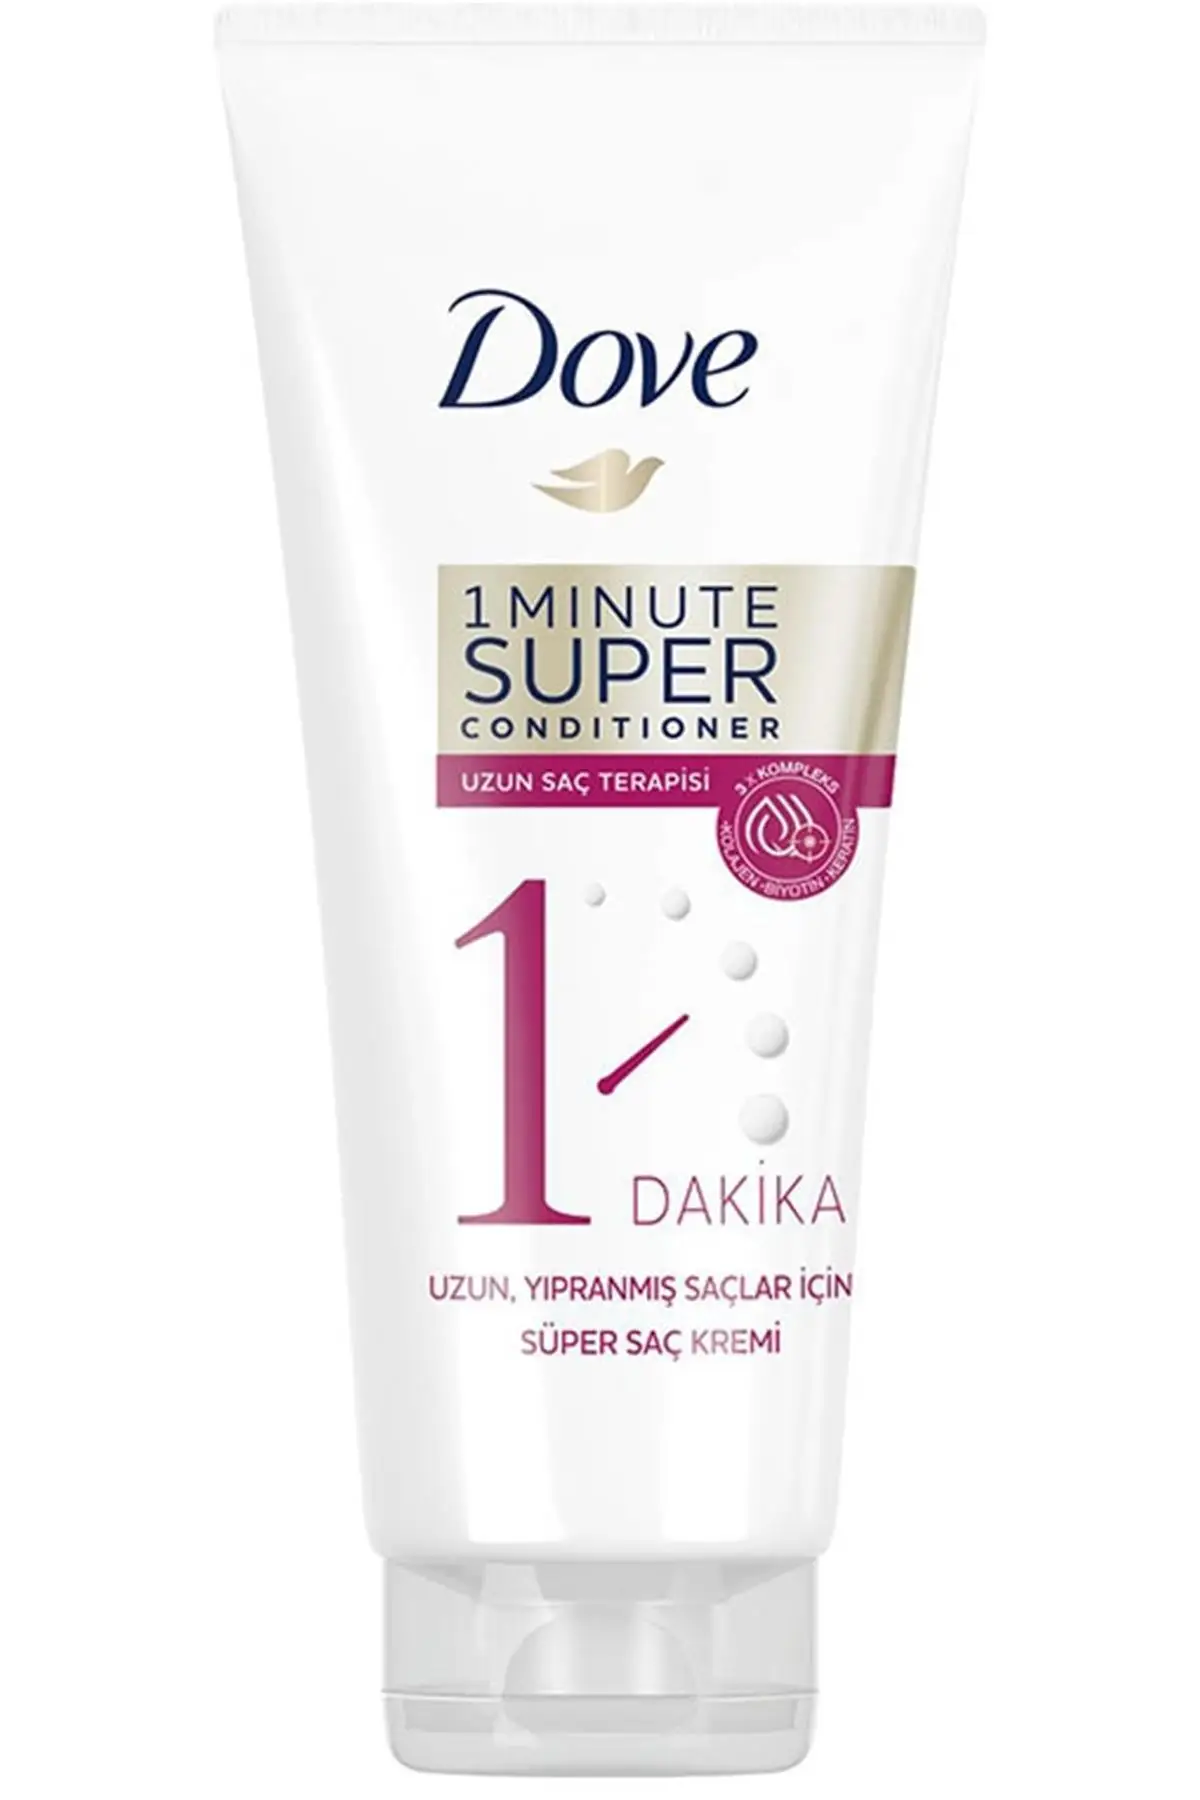 

Суперкондиционер для волос бренда: Dove, терапия за 1 минуту, 170 мл, Категория: кондиционер для волос